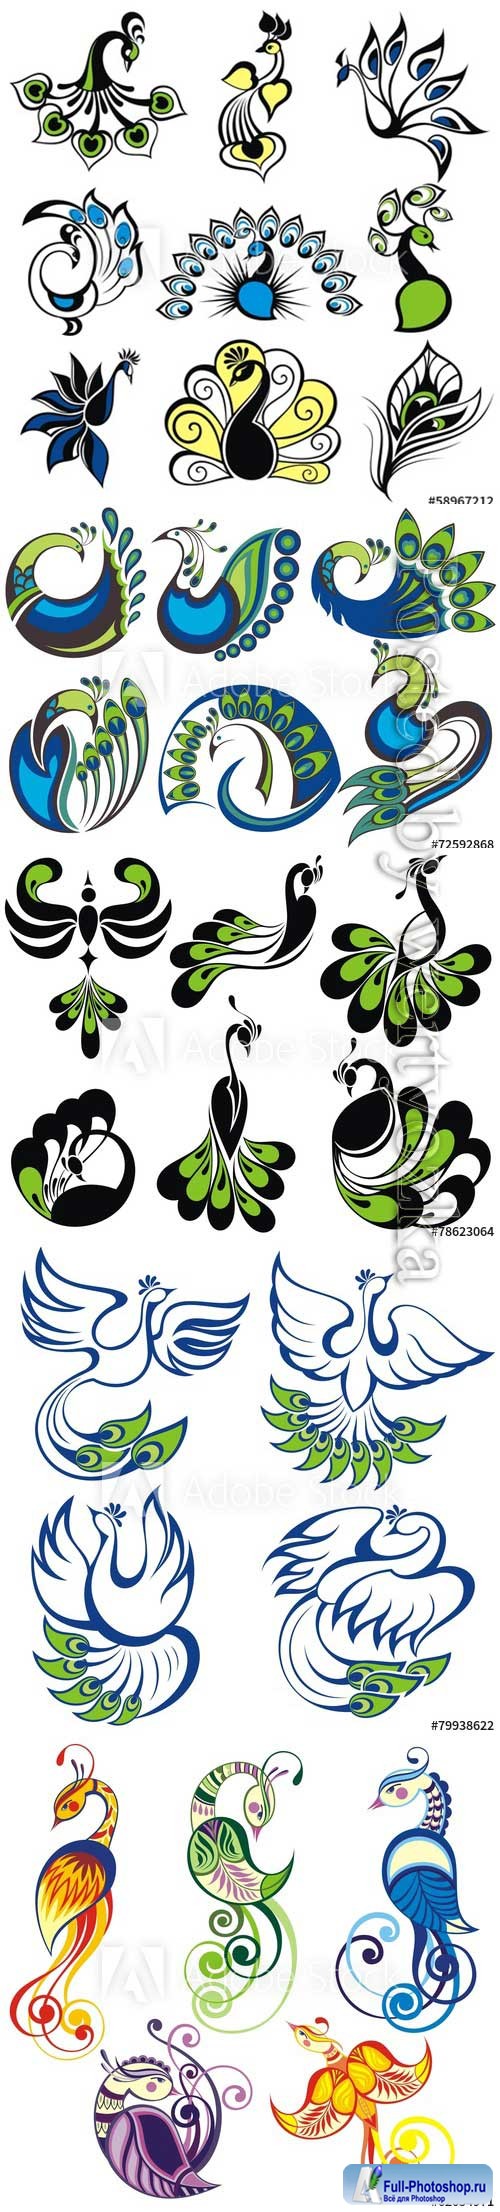 Birds icons, peacock vector birds